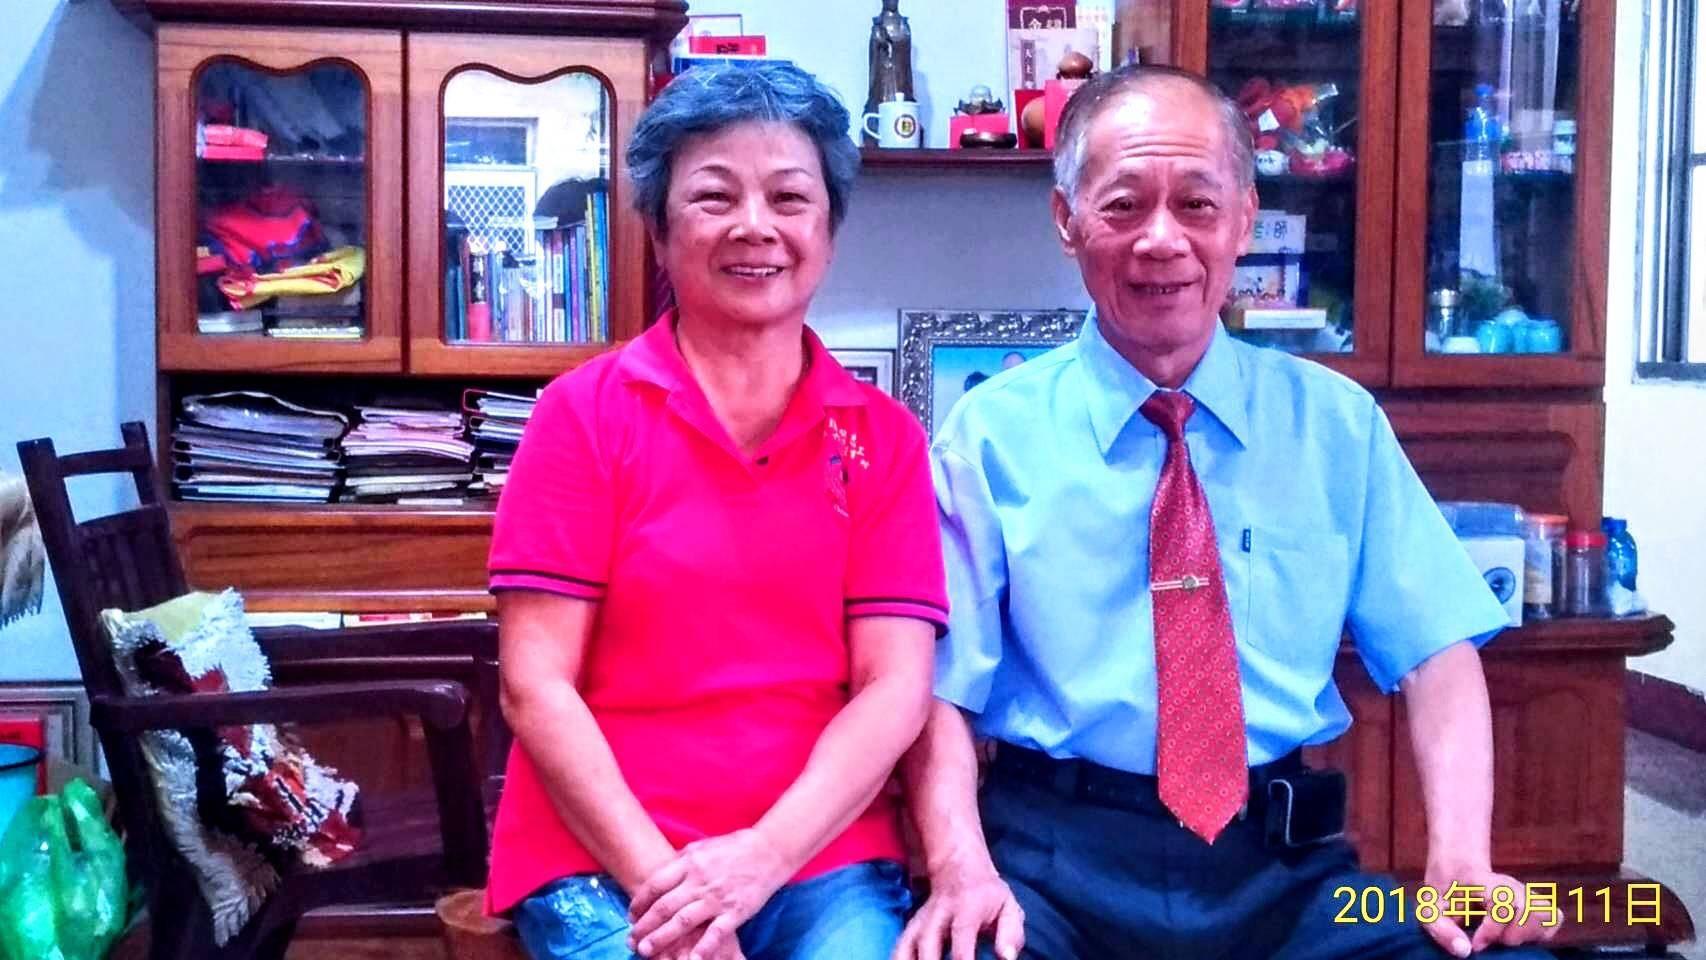 謝鳳美老師與丈夫蔡克忠先生107年8月11日合影